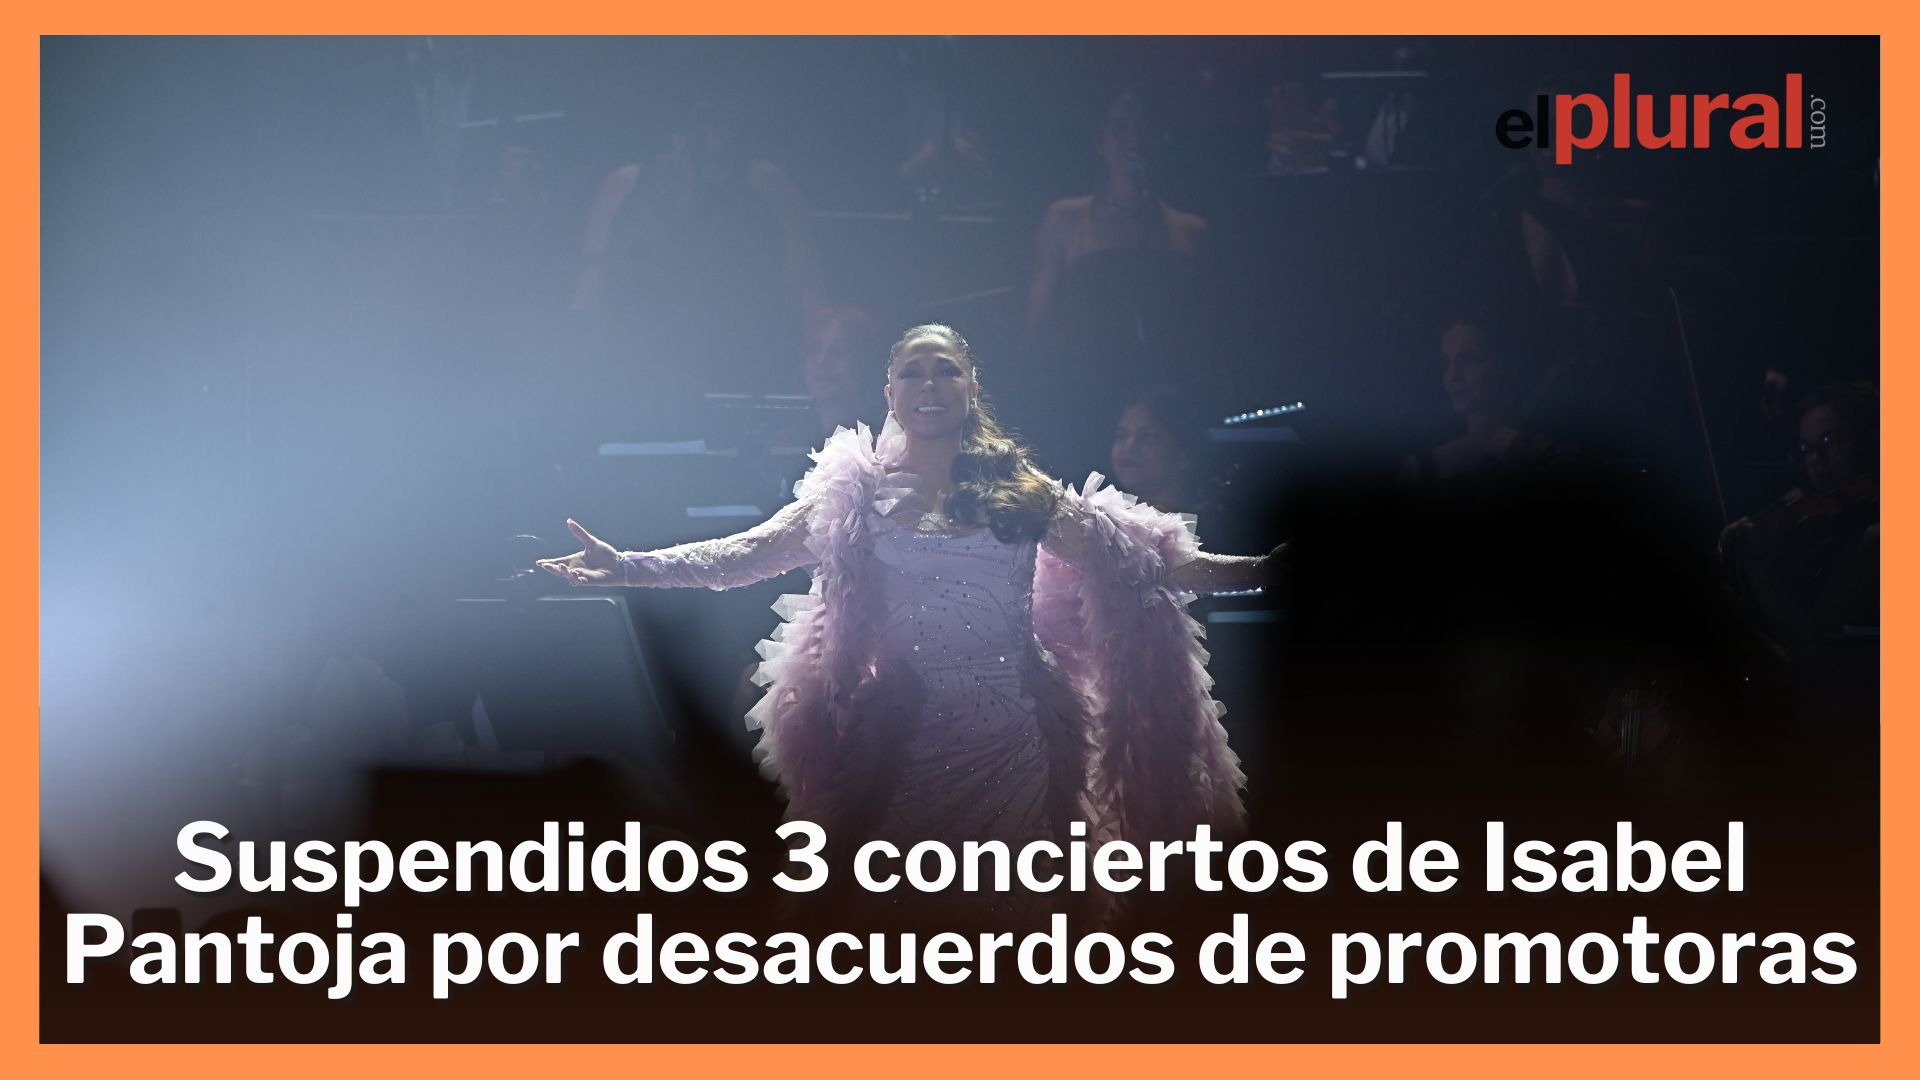 Suspendidos 3 conciertos de Isabel Pantoja por desacuerdos de promotoras